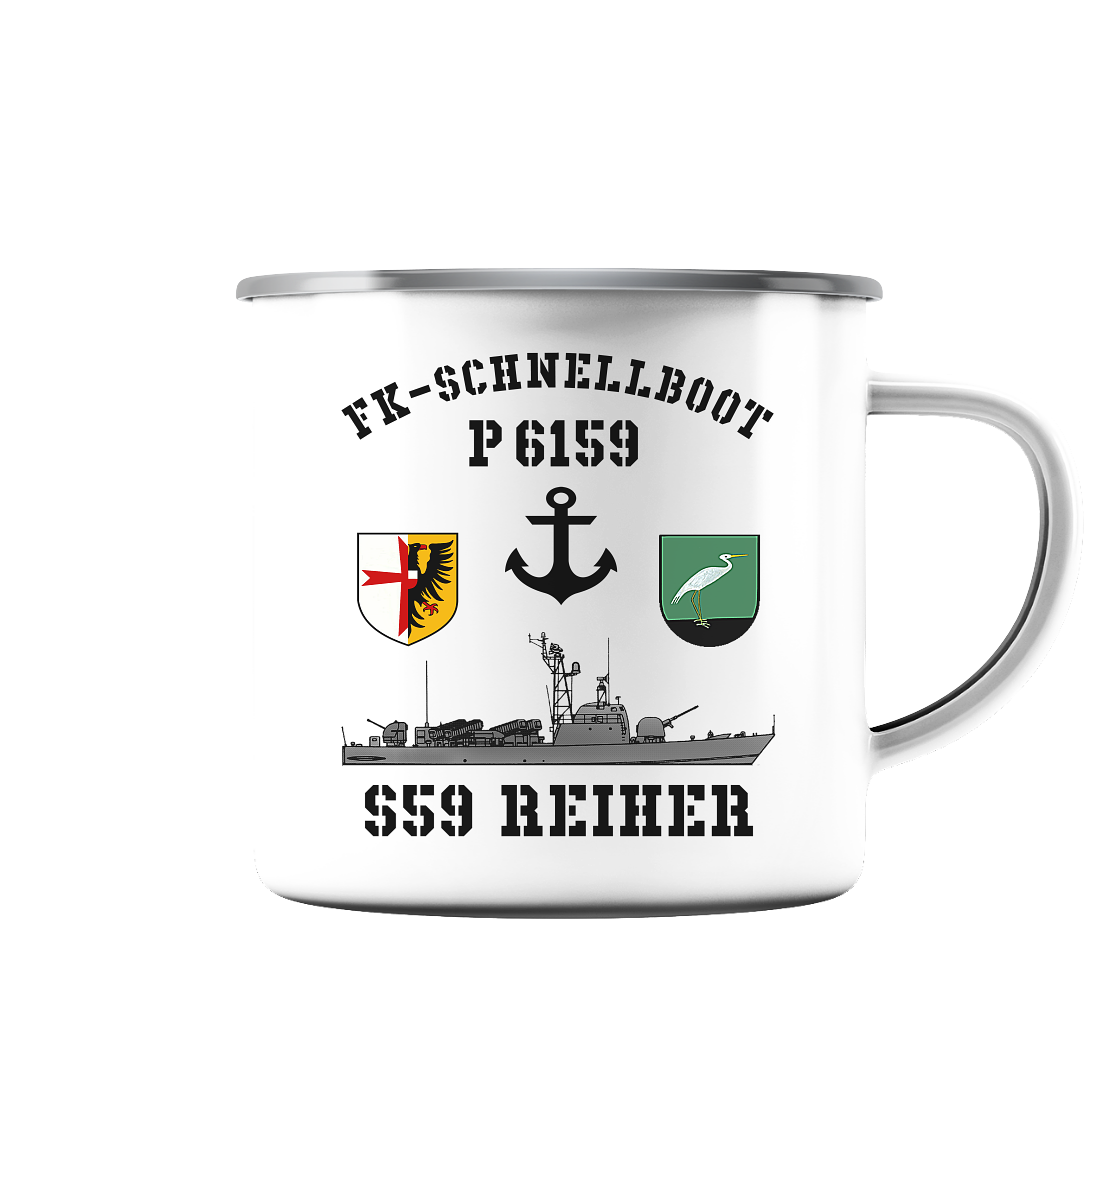 FK-Schnellboot P6159 REIHER Anker - Emaille Tasse (Silber)